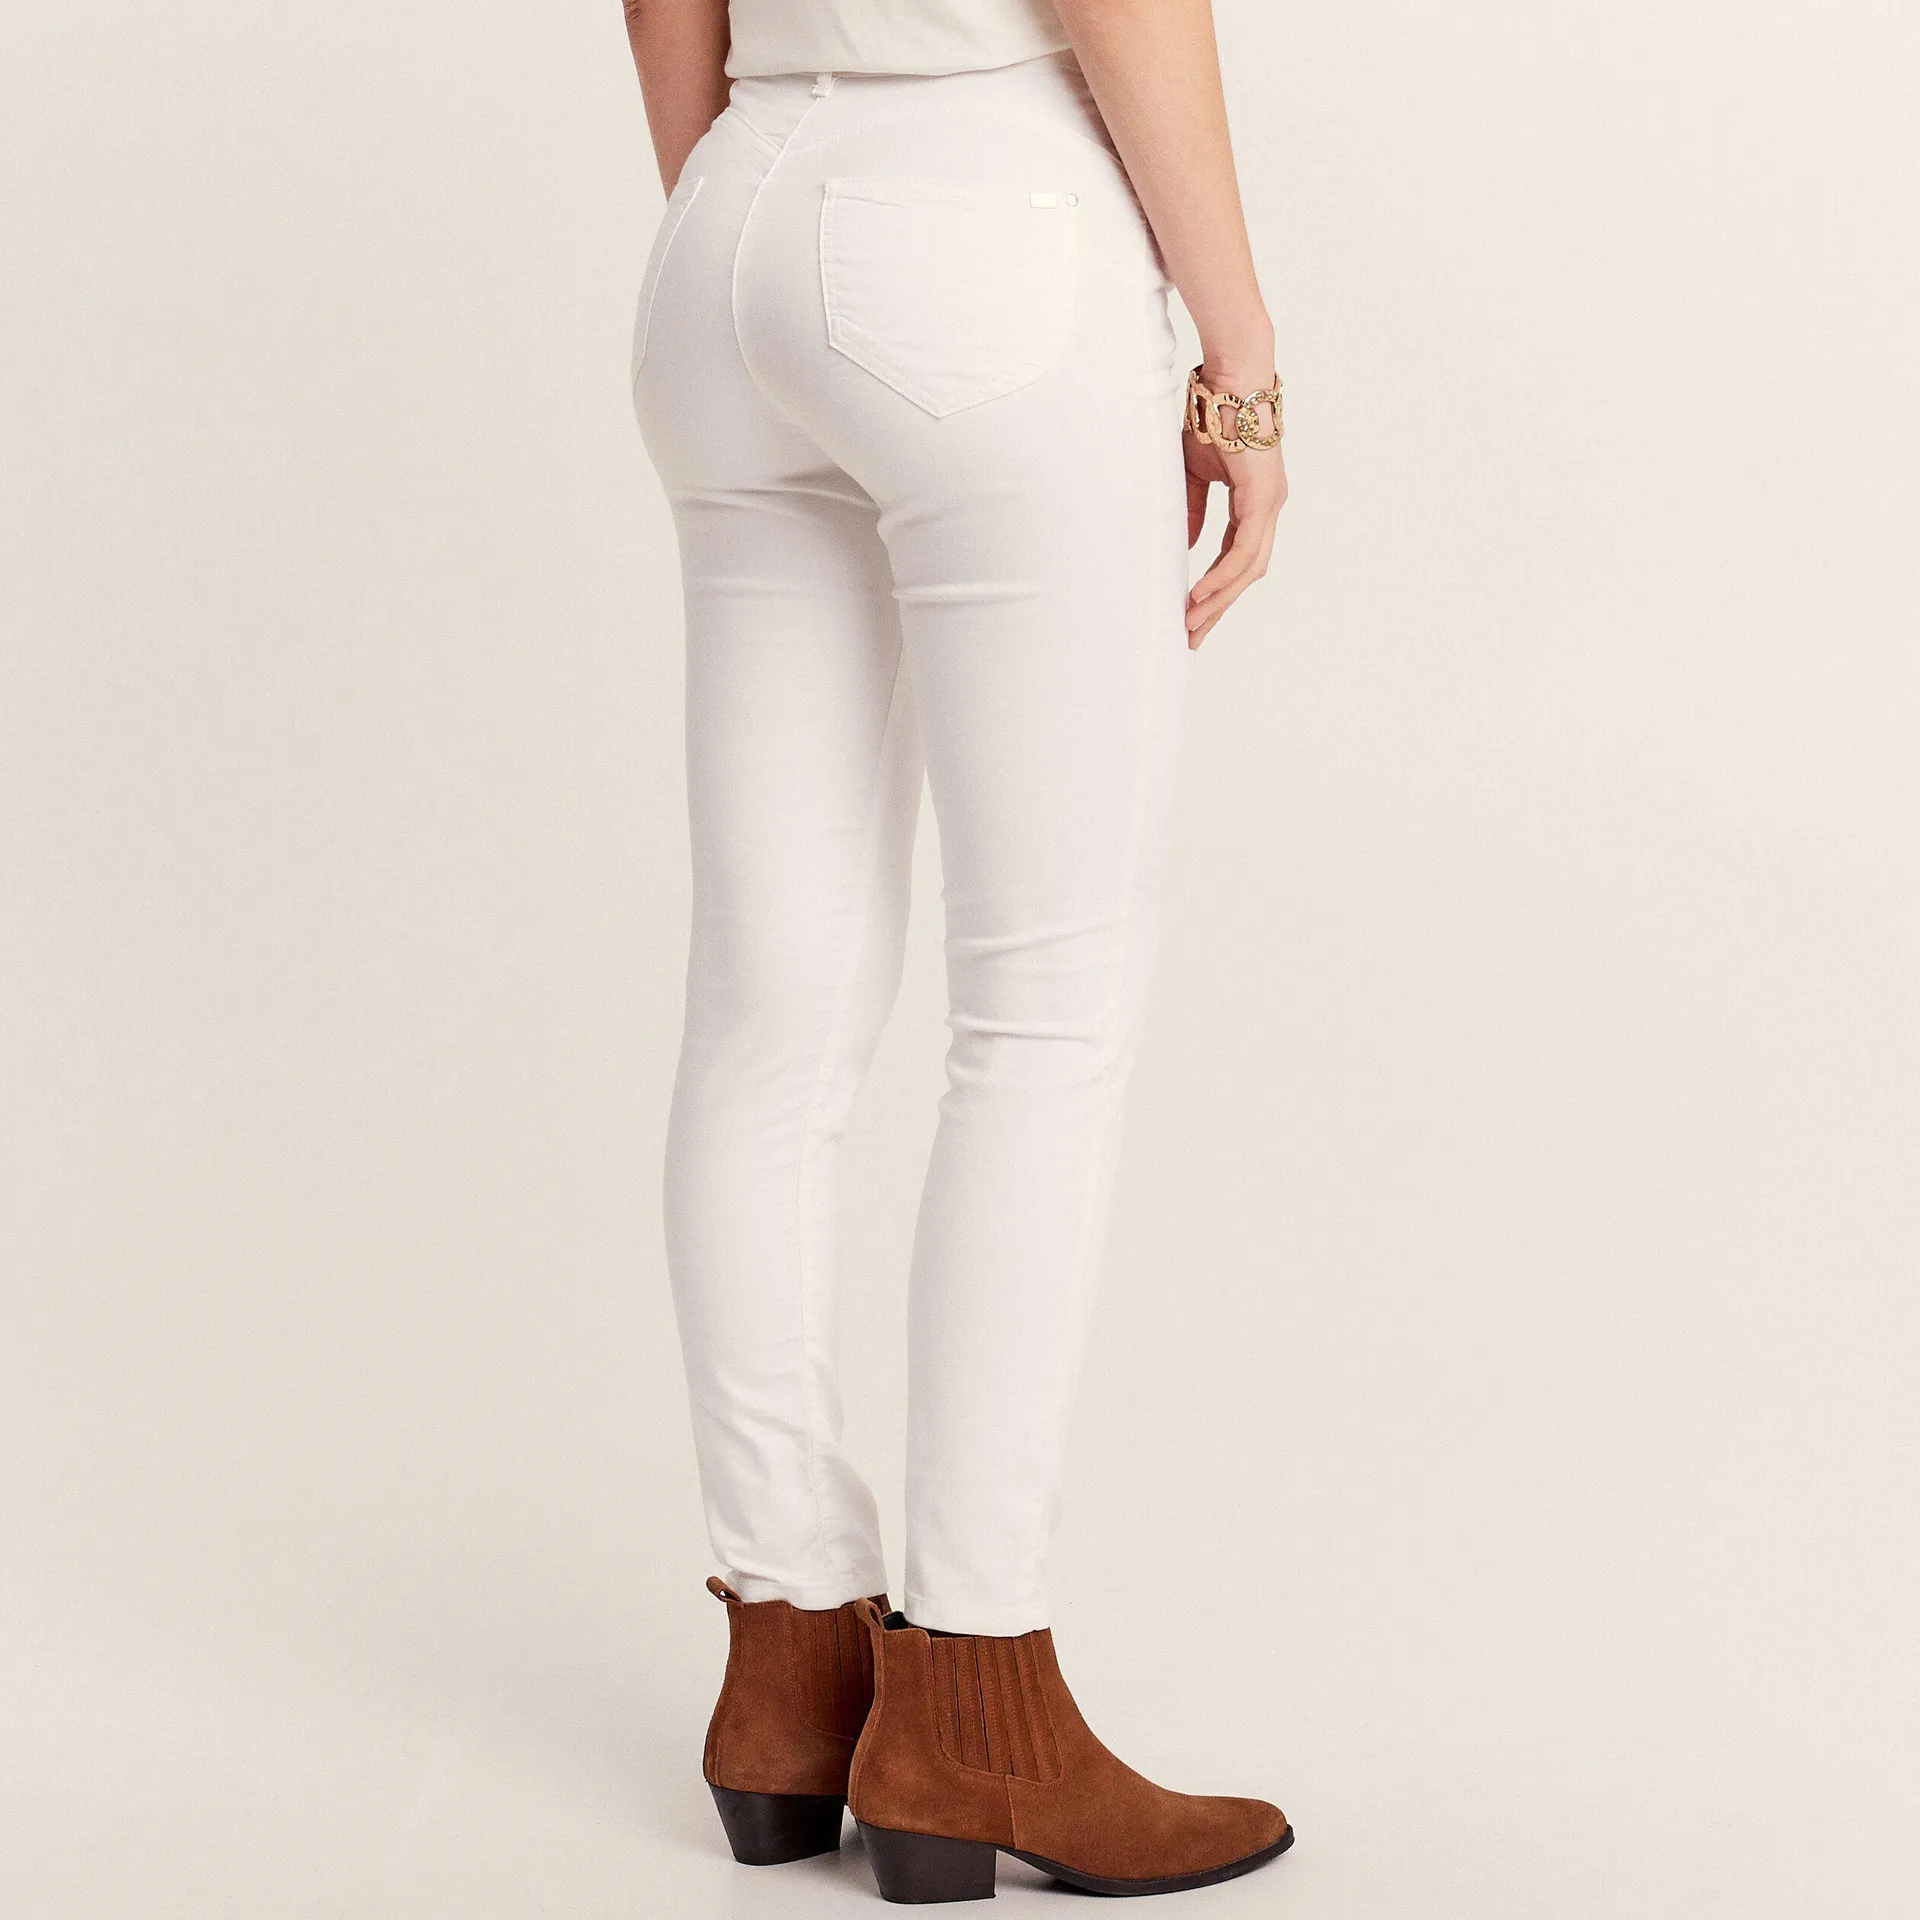 Pantalon léger taille standard 7/8ème blanc femme